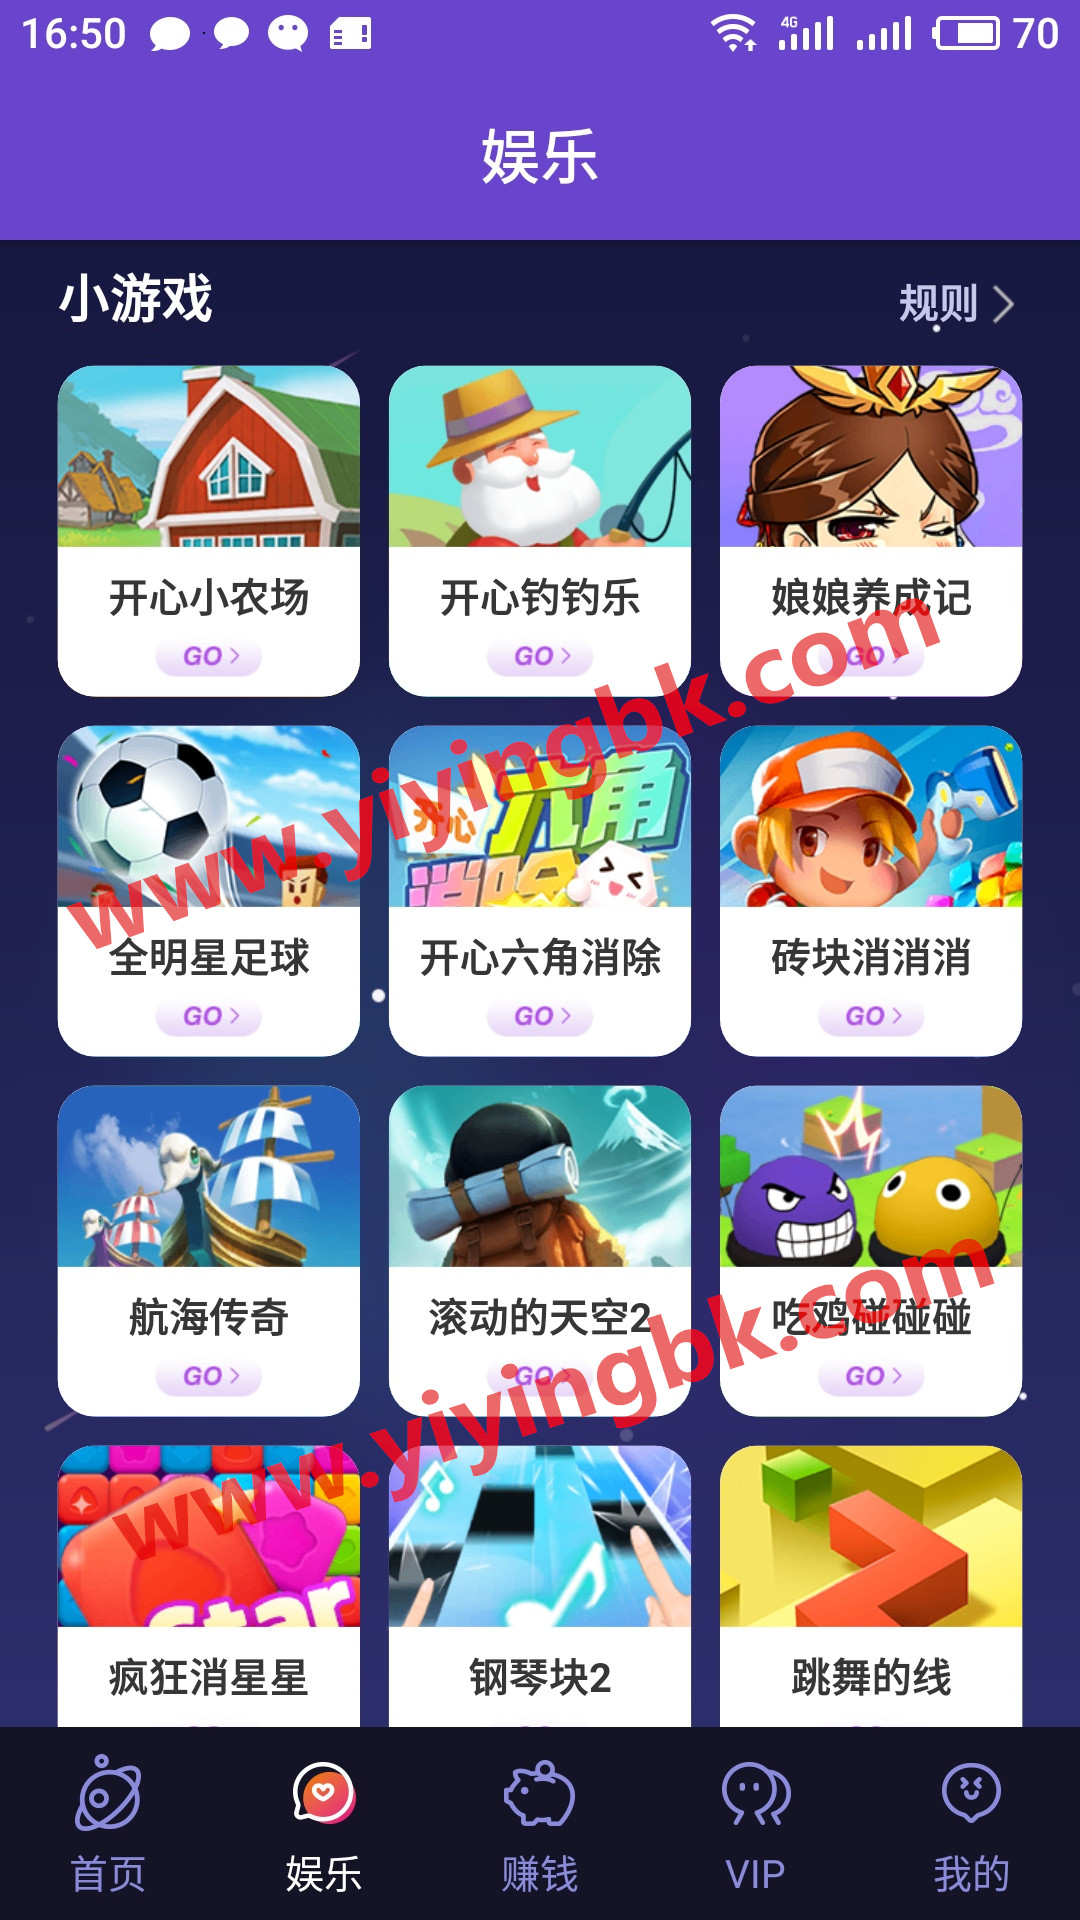 免费玩小游戏领红包赚钱，www.yiyingbk.com